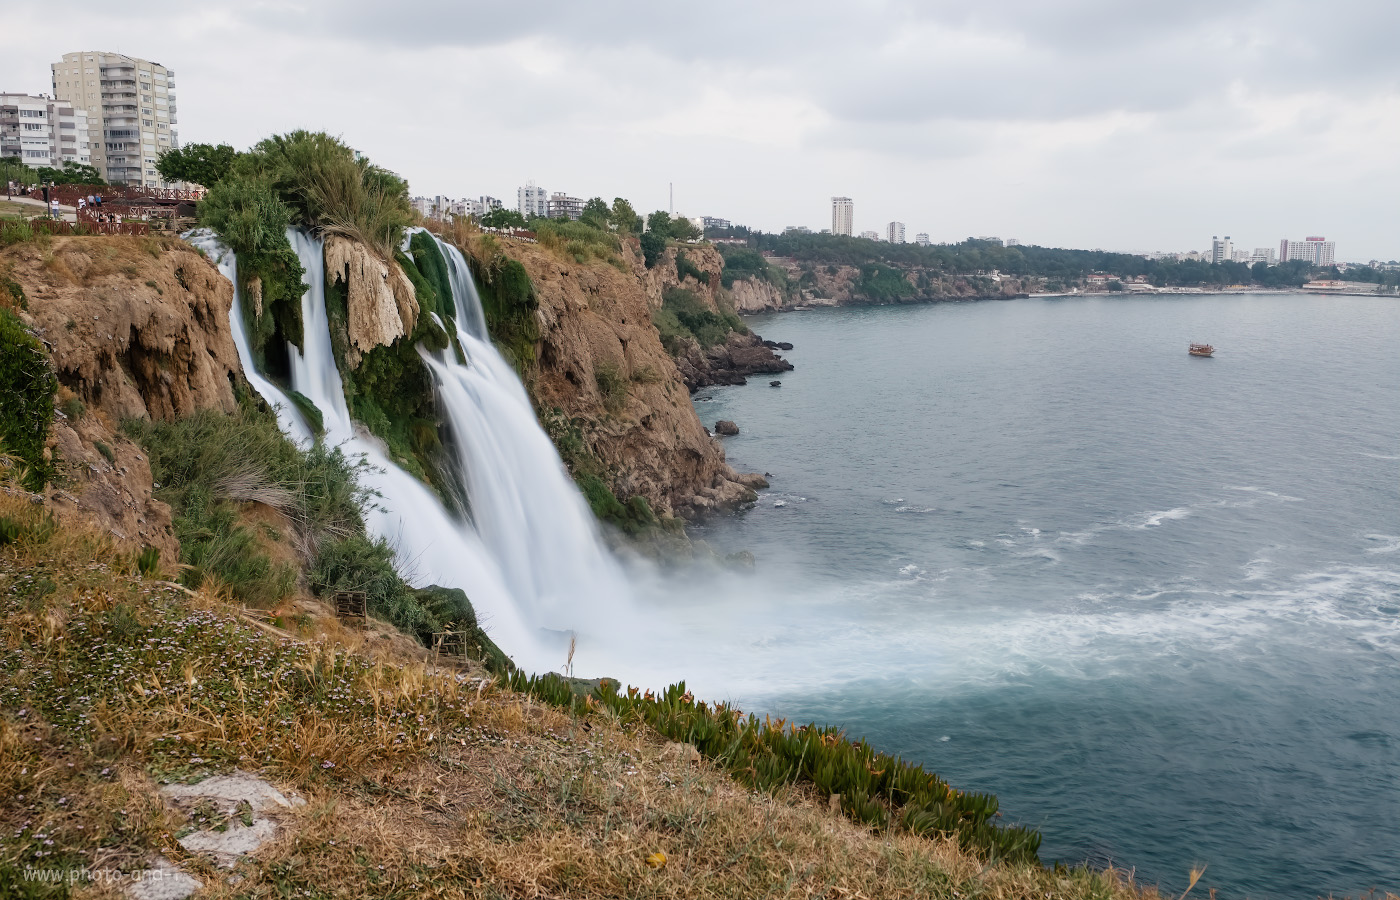 Фотография 29. Какие интересные места посетить, отдыхая в Турции? Например, Нижний Дюденский водопад. 0.31 сек., 8.0, 200, +1.0, 20.